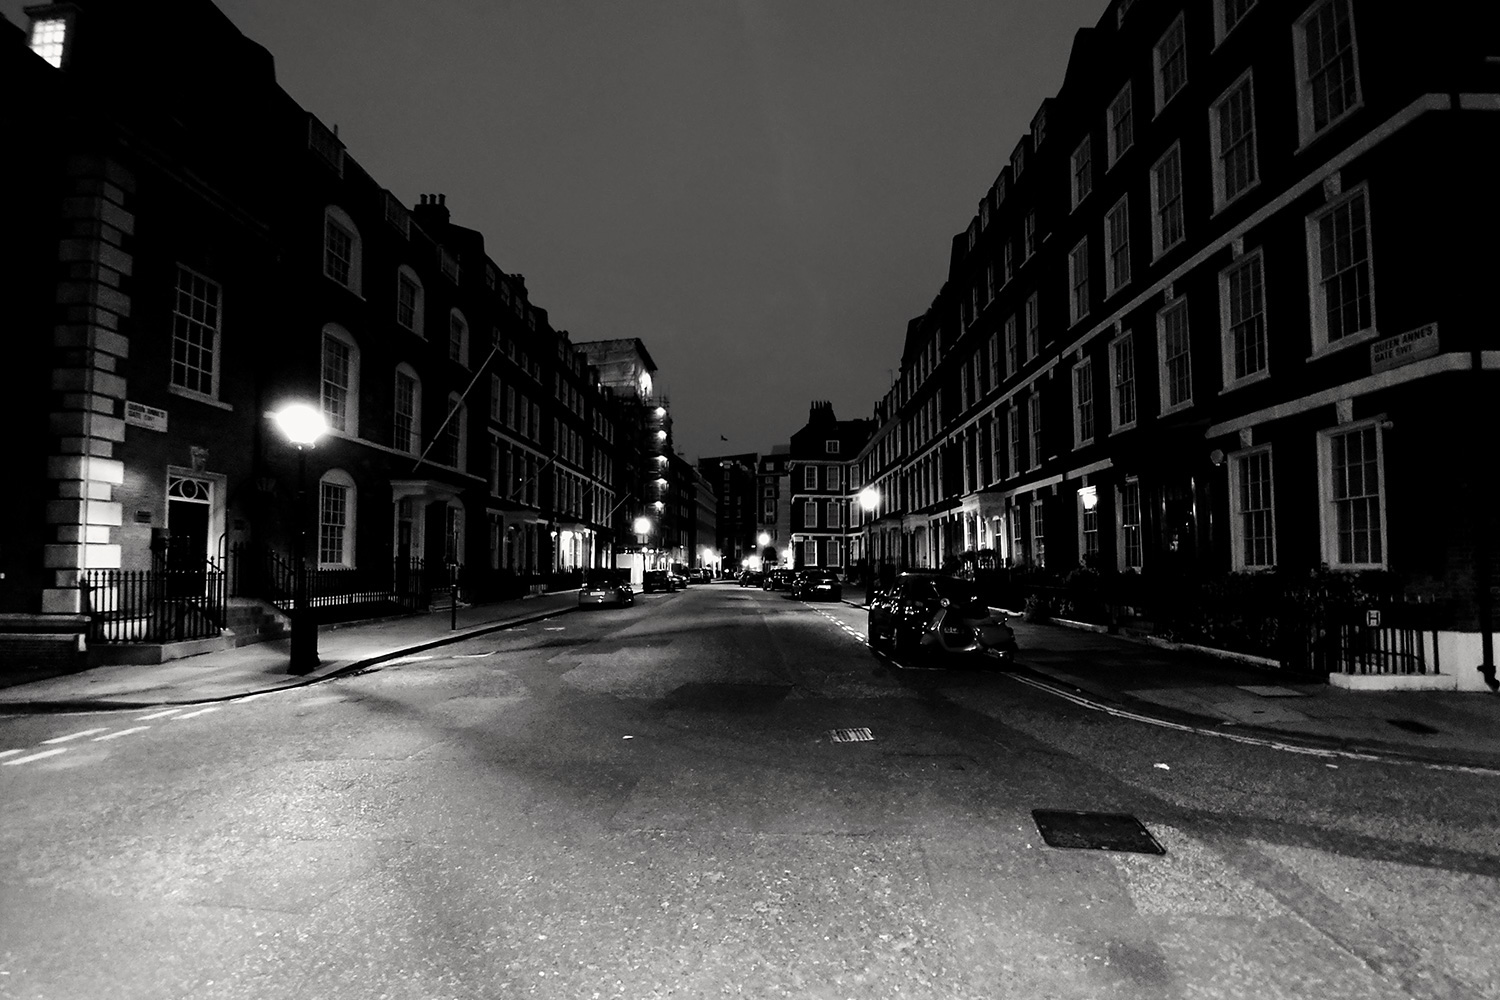 LG V30 camera sample black and white street